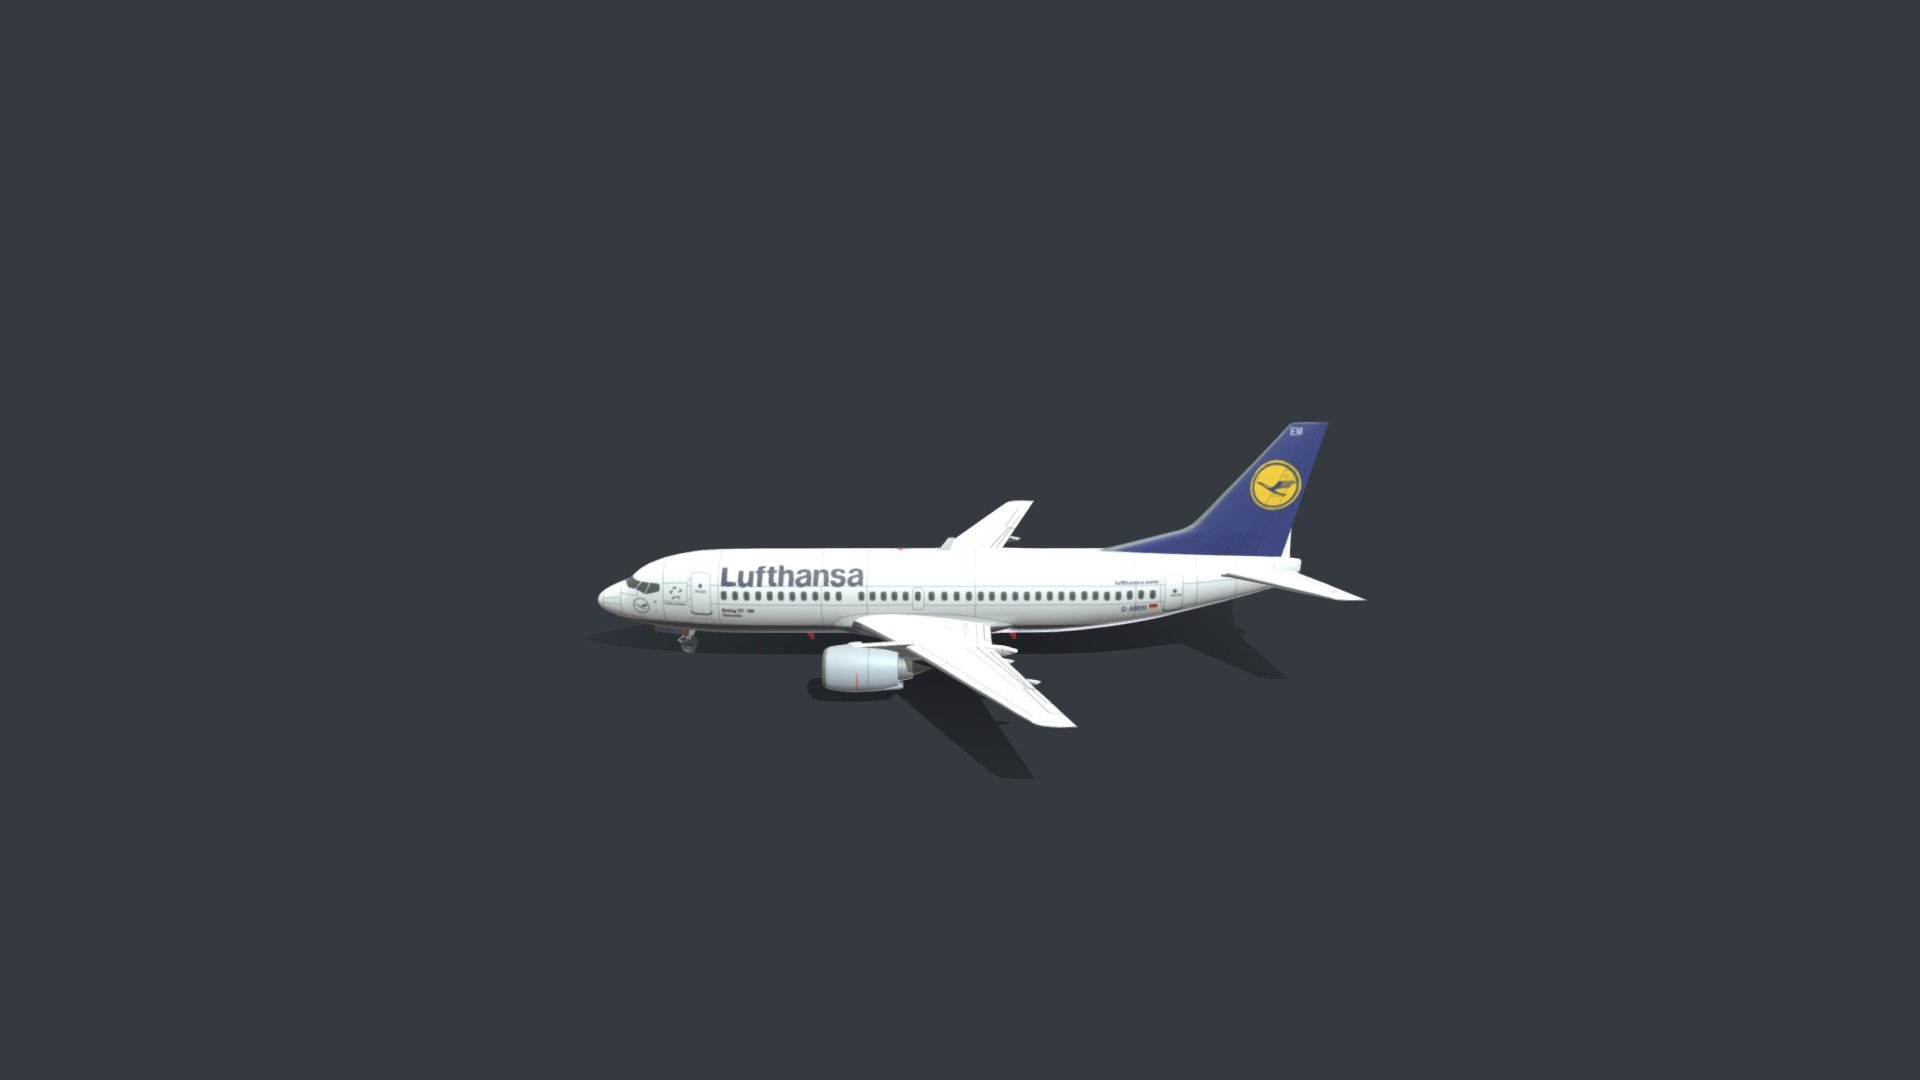 Boeing 737-300 Model - Boeing 737-300 Classic (Lufthansa) - Download Free 3D model by eldaaar 3d model